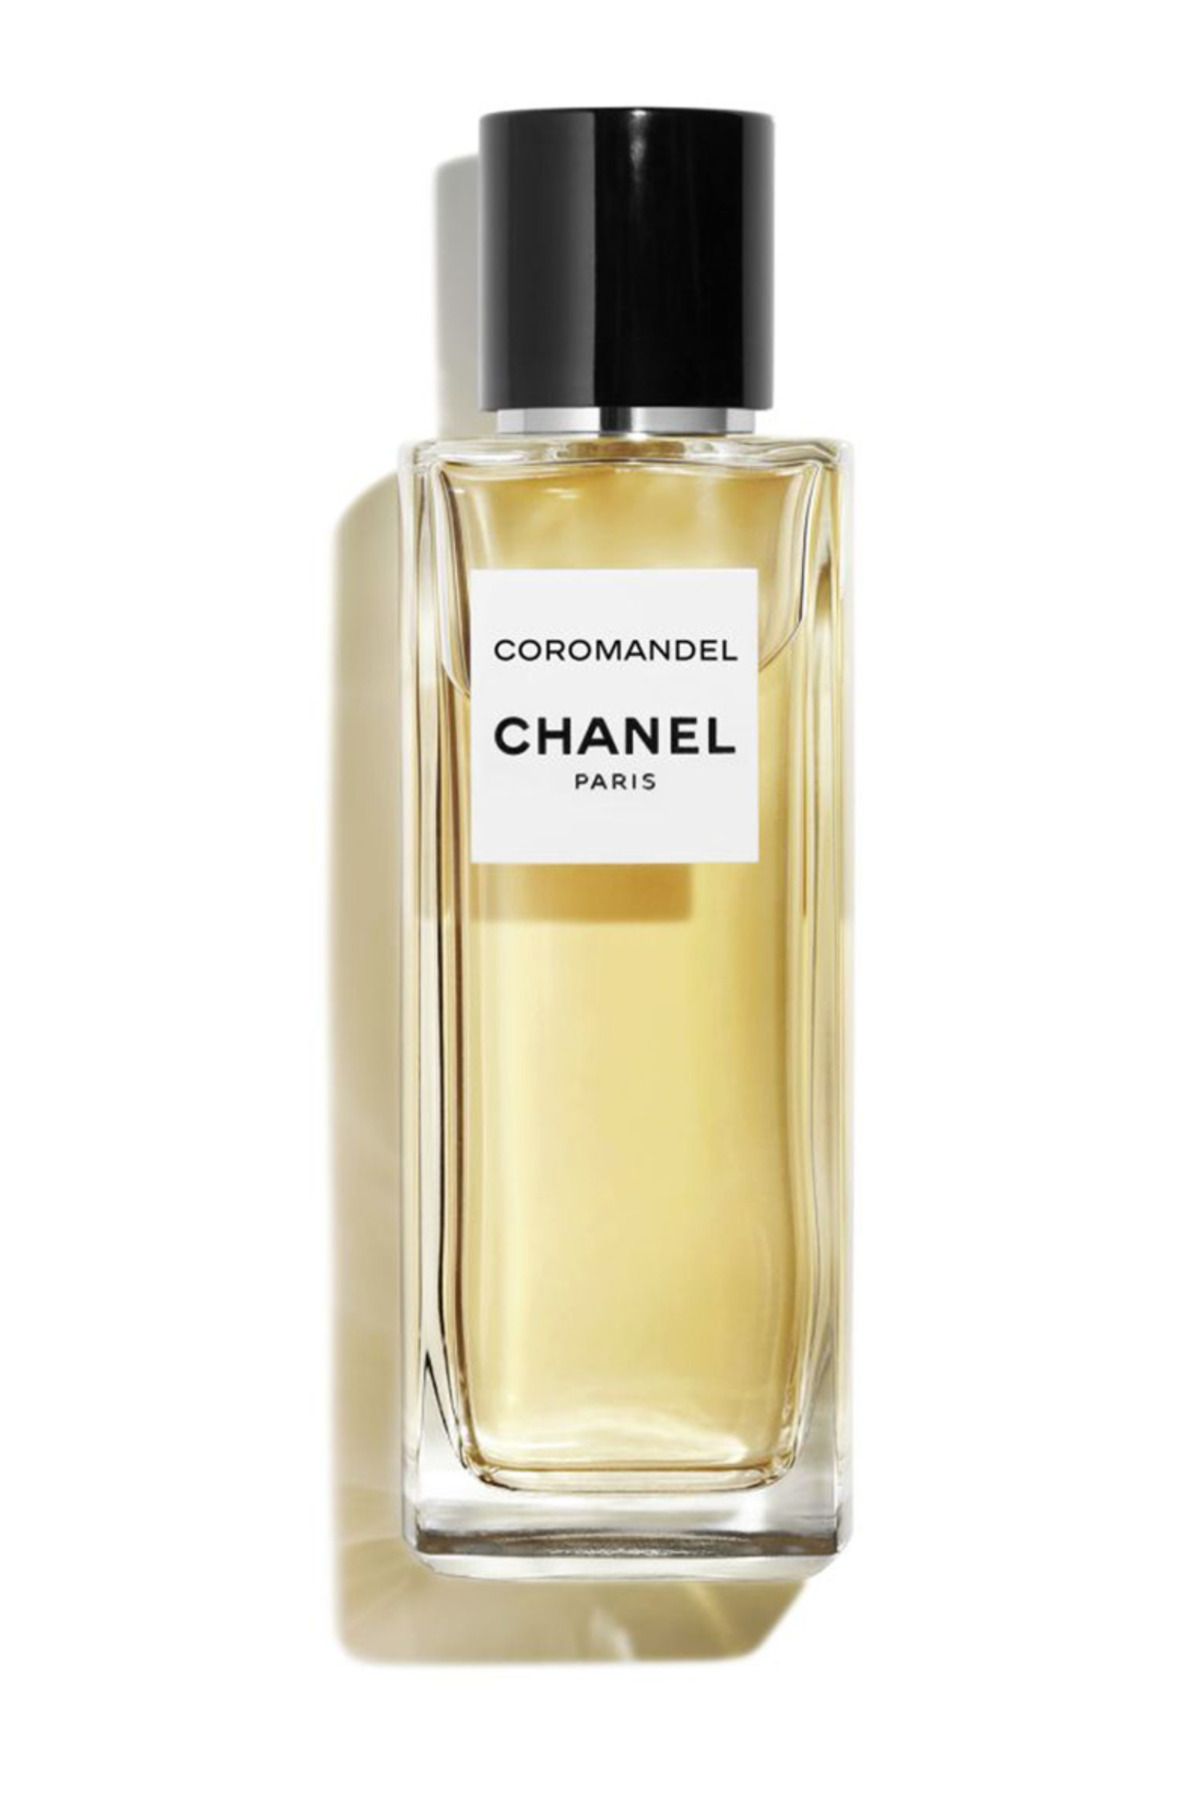 Chanel Les Exclusifs de Chanel Coromandel Eau de Parfum 75 Ml